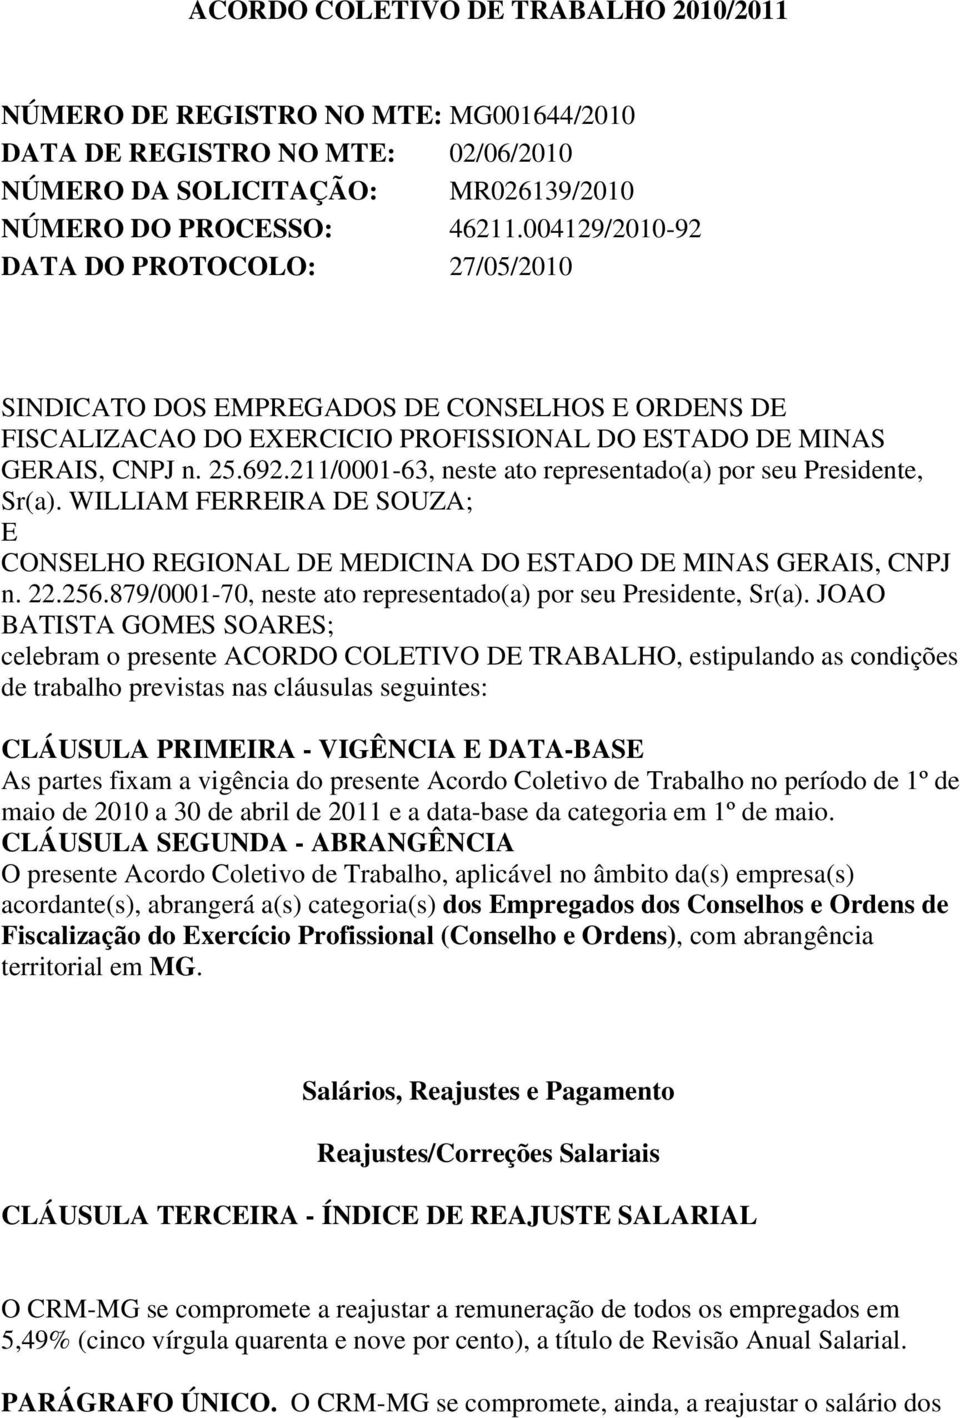 211/0001-63, neste ato representado(a) por seu Presidente, Sr(a). WILLIAM FERREIRA DE SOUZA; E CONSELHO REGIONAL DE MEDICINA DO ESTADO DE MINAS GERAIS, CNPJ n. 22.256.